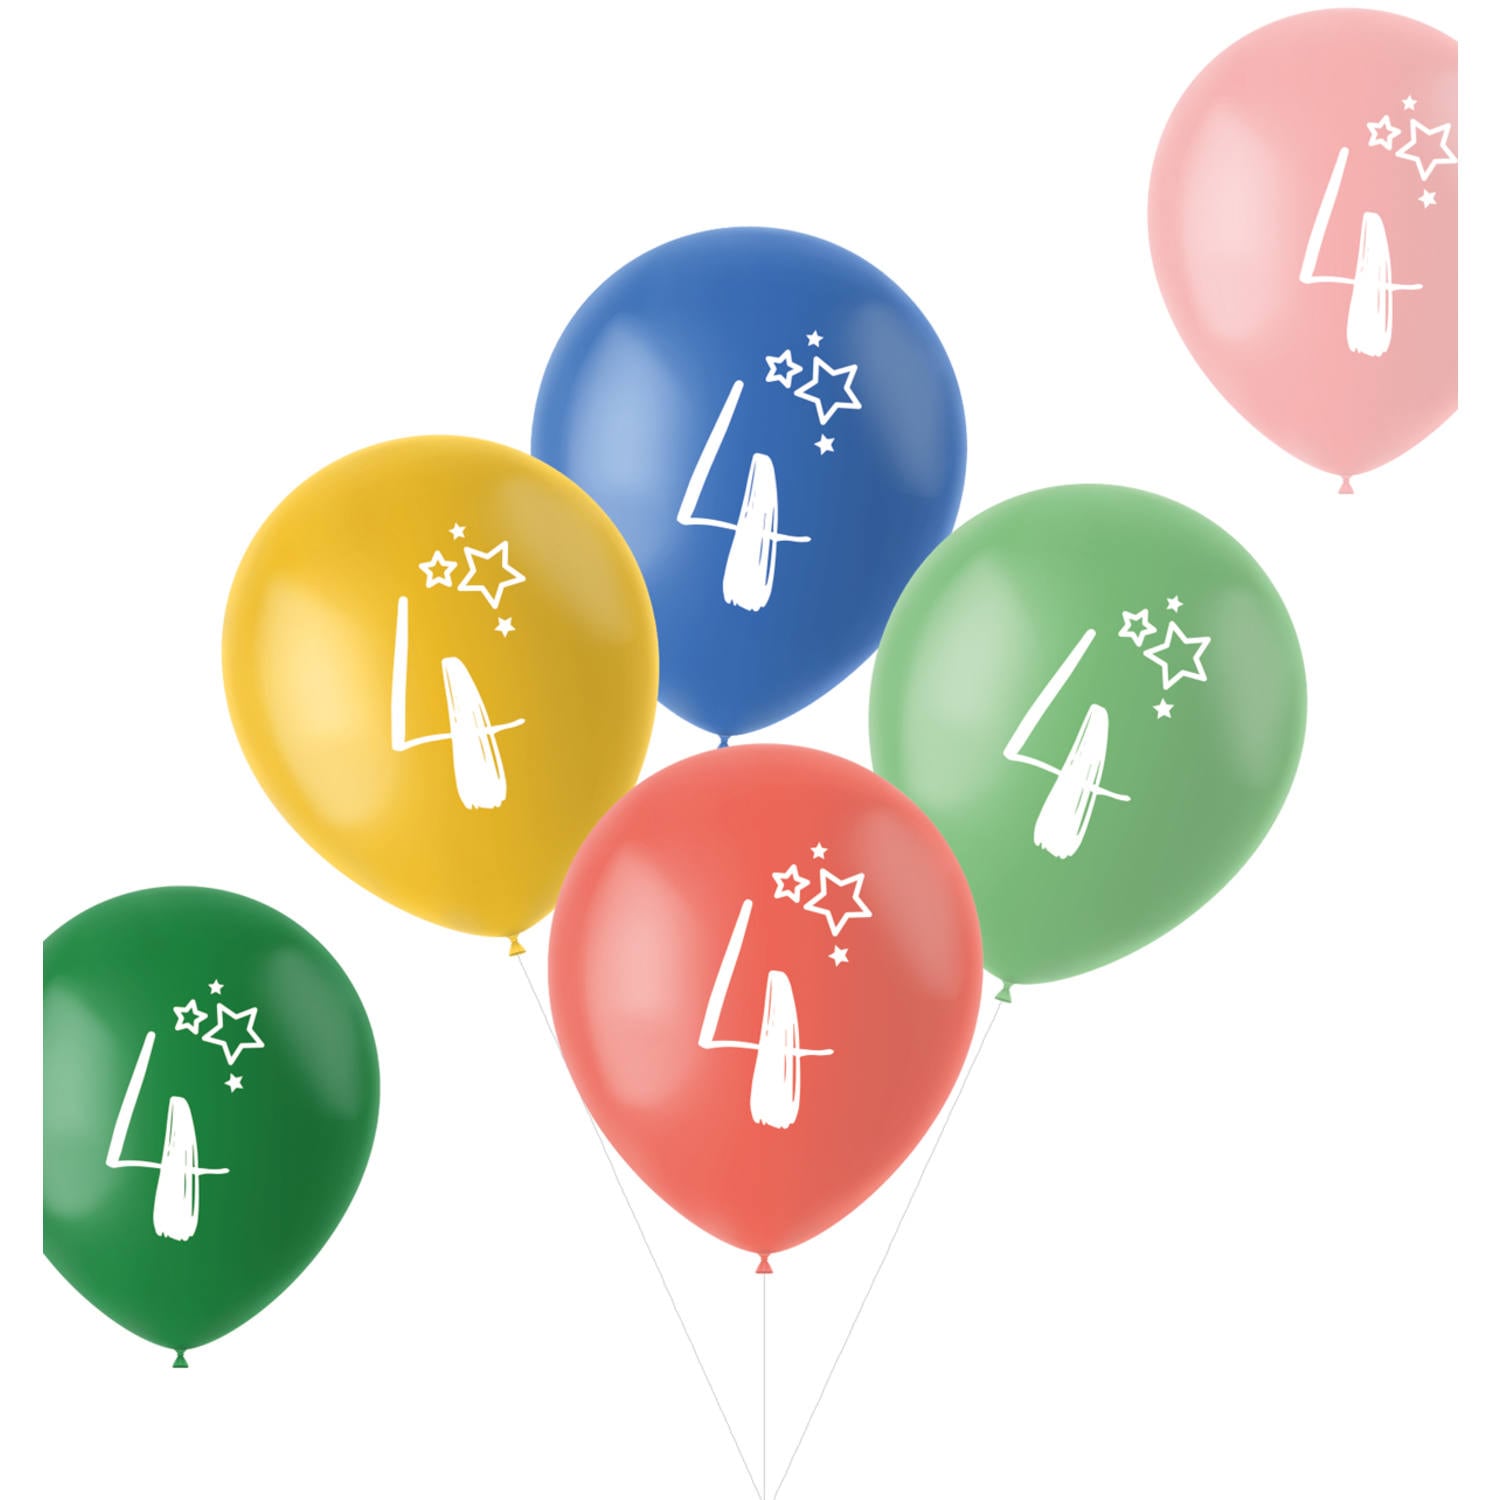 Sifferballonger 4 år, 6-pack